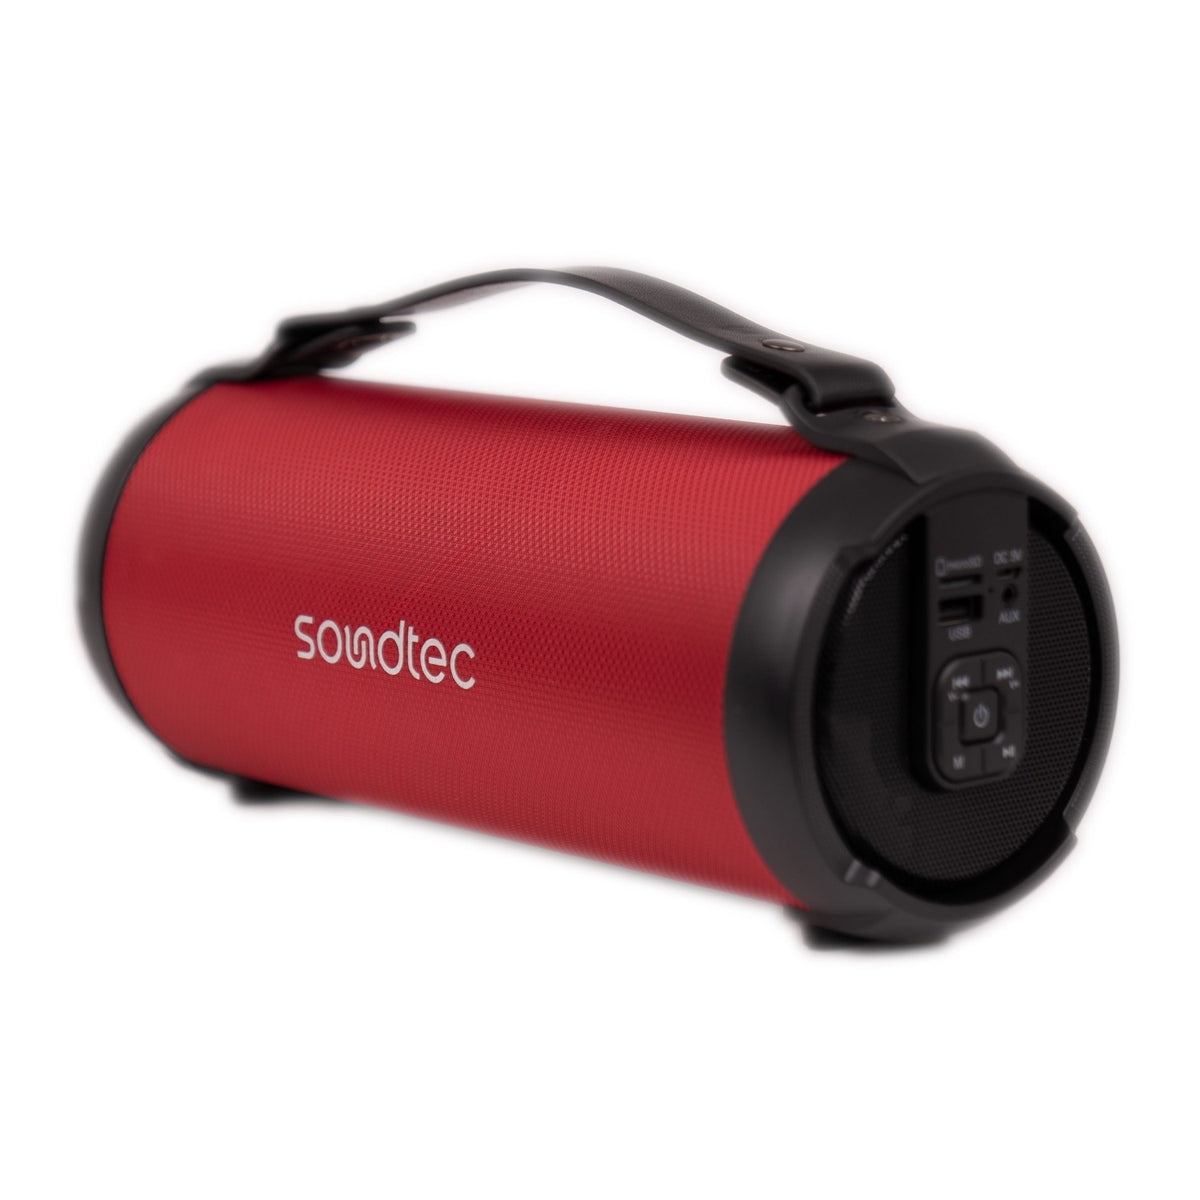 Porodo TRIP Soundtec Basic speaker - Black, Red, Dark Blue [ PDTRIPSPK ]